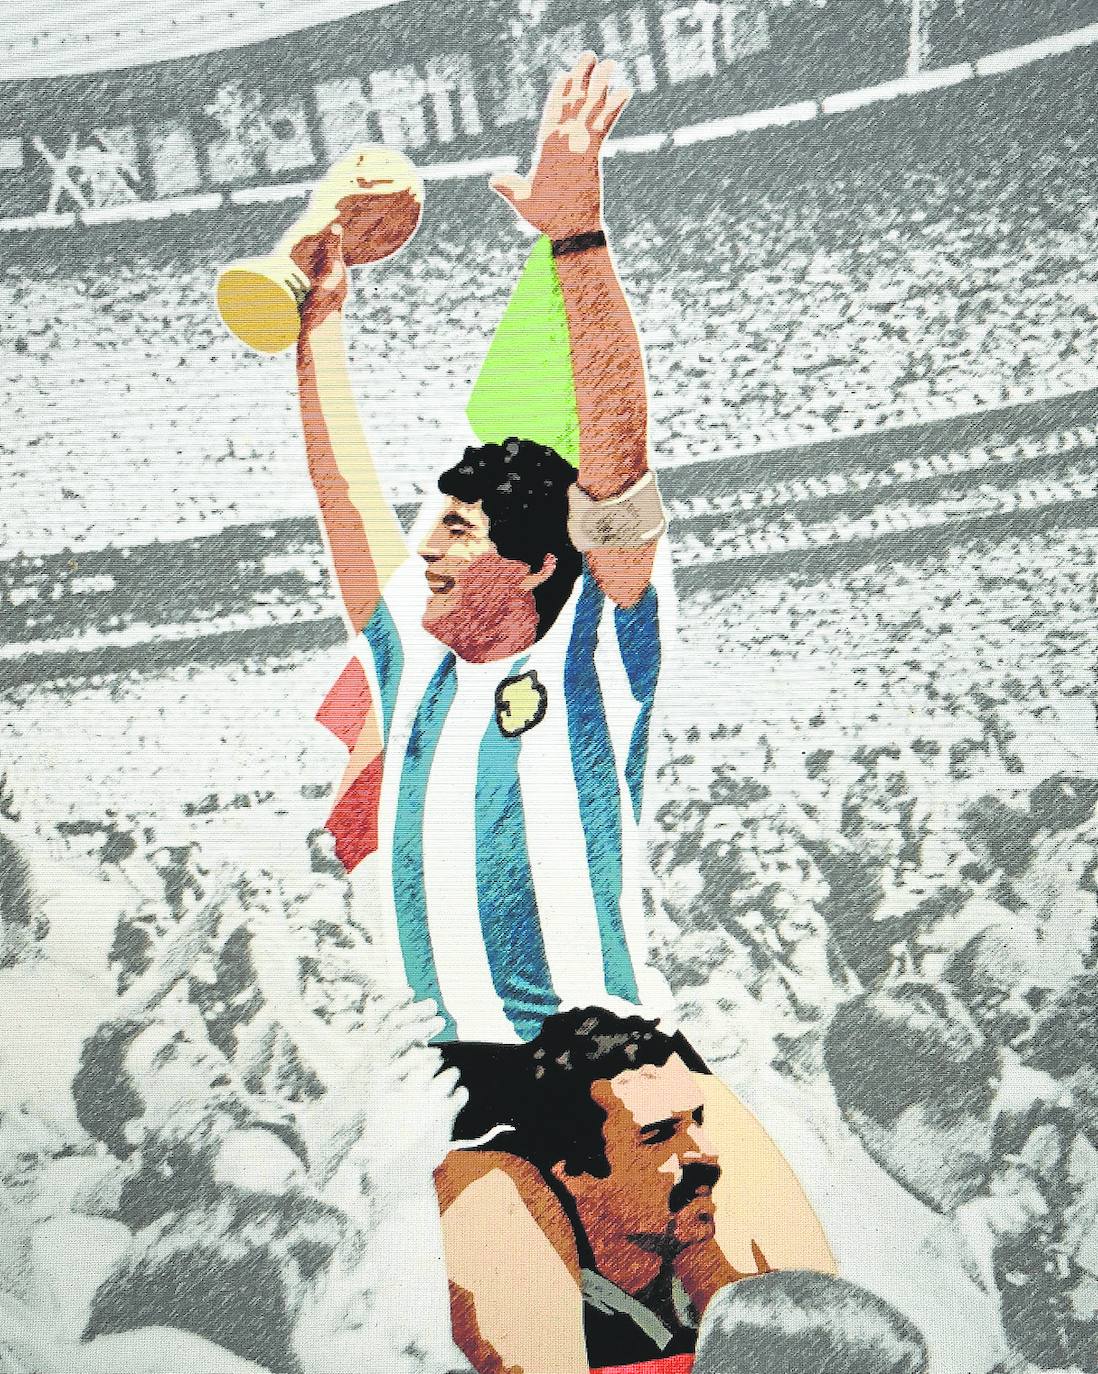 Ilustraciónde Javier Rodríguez Fajardo del histórico momento de Maradona en México '86 y a hombros de Cejas.